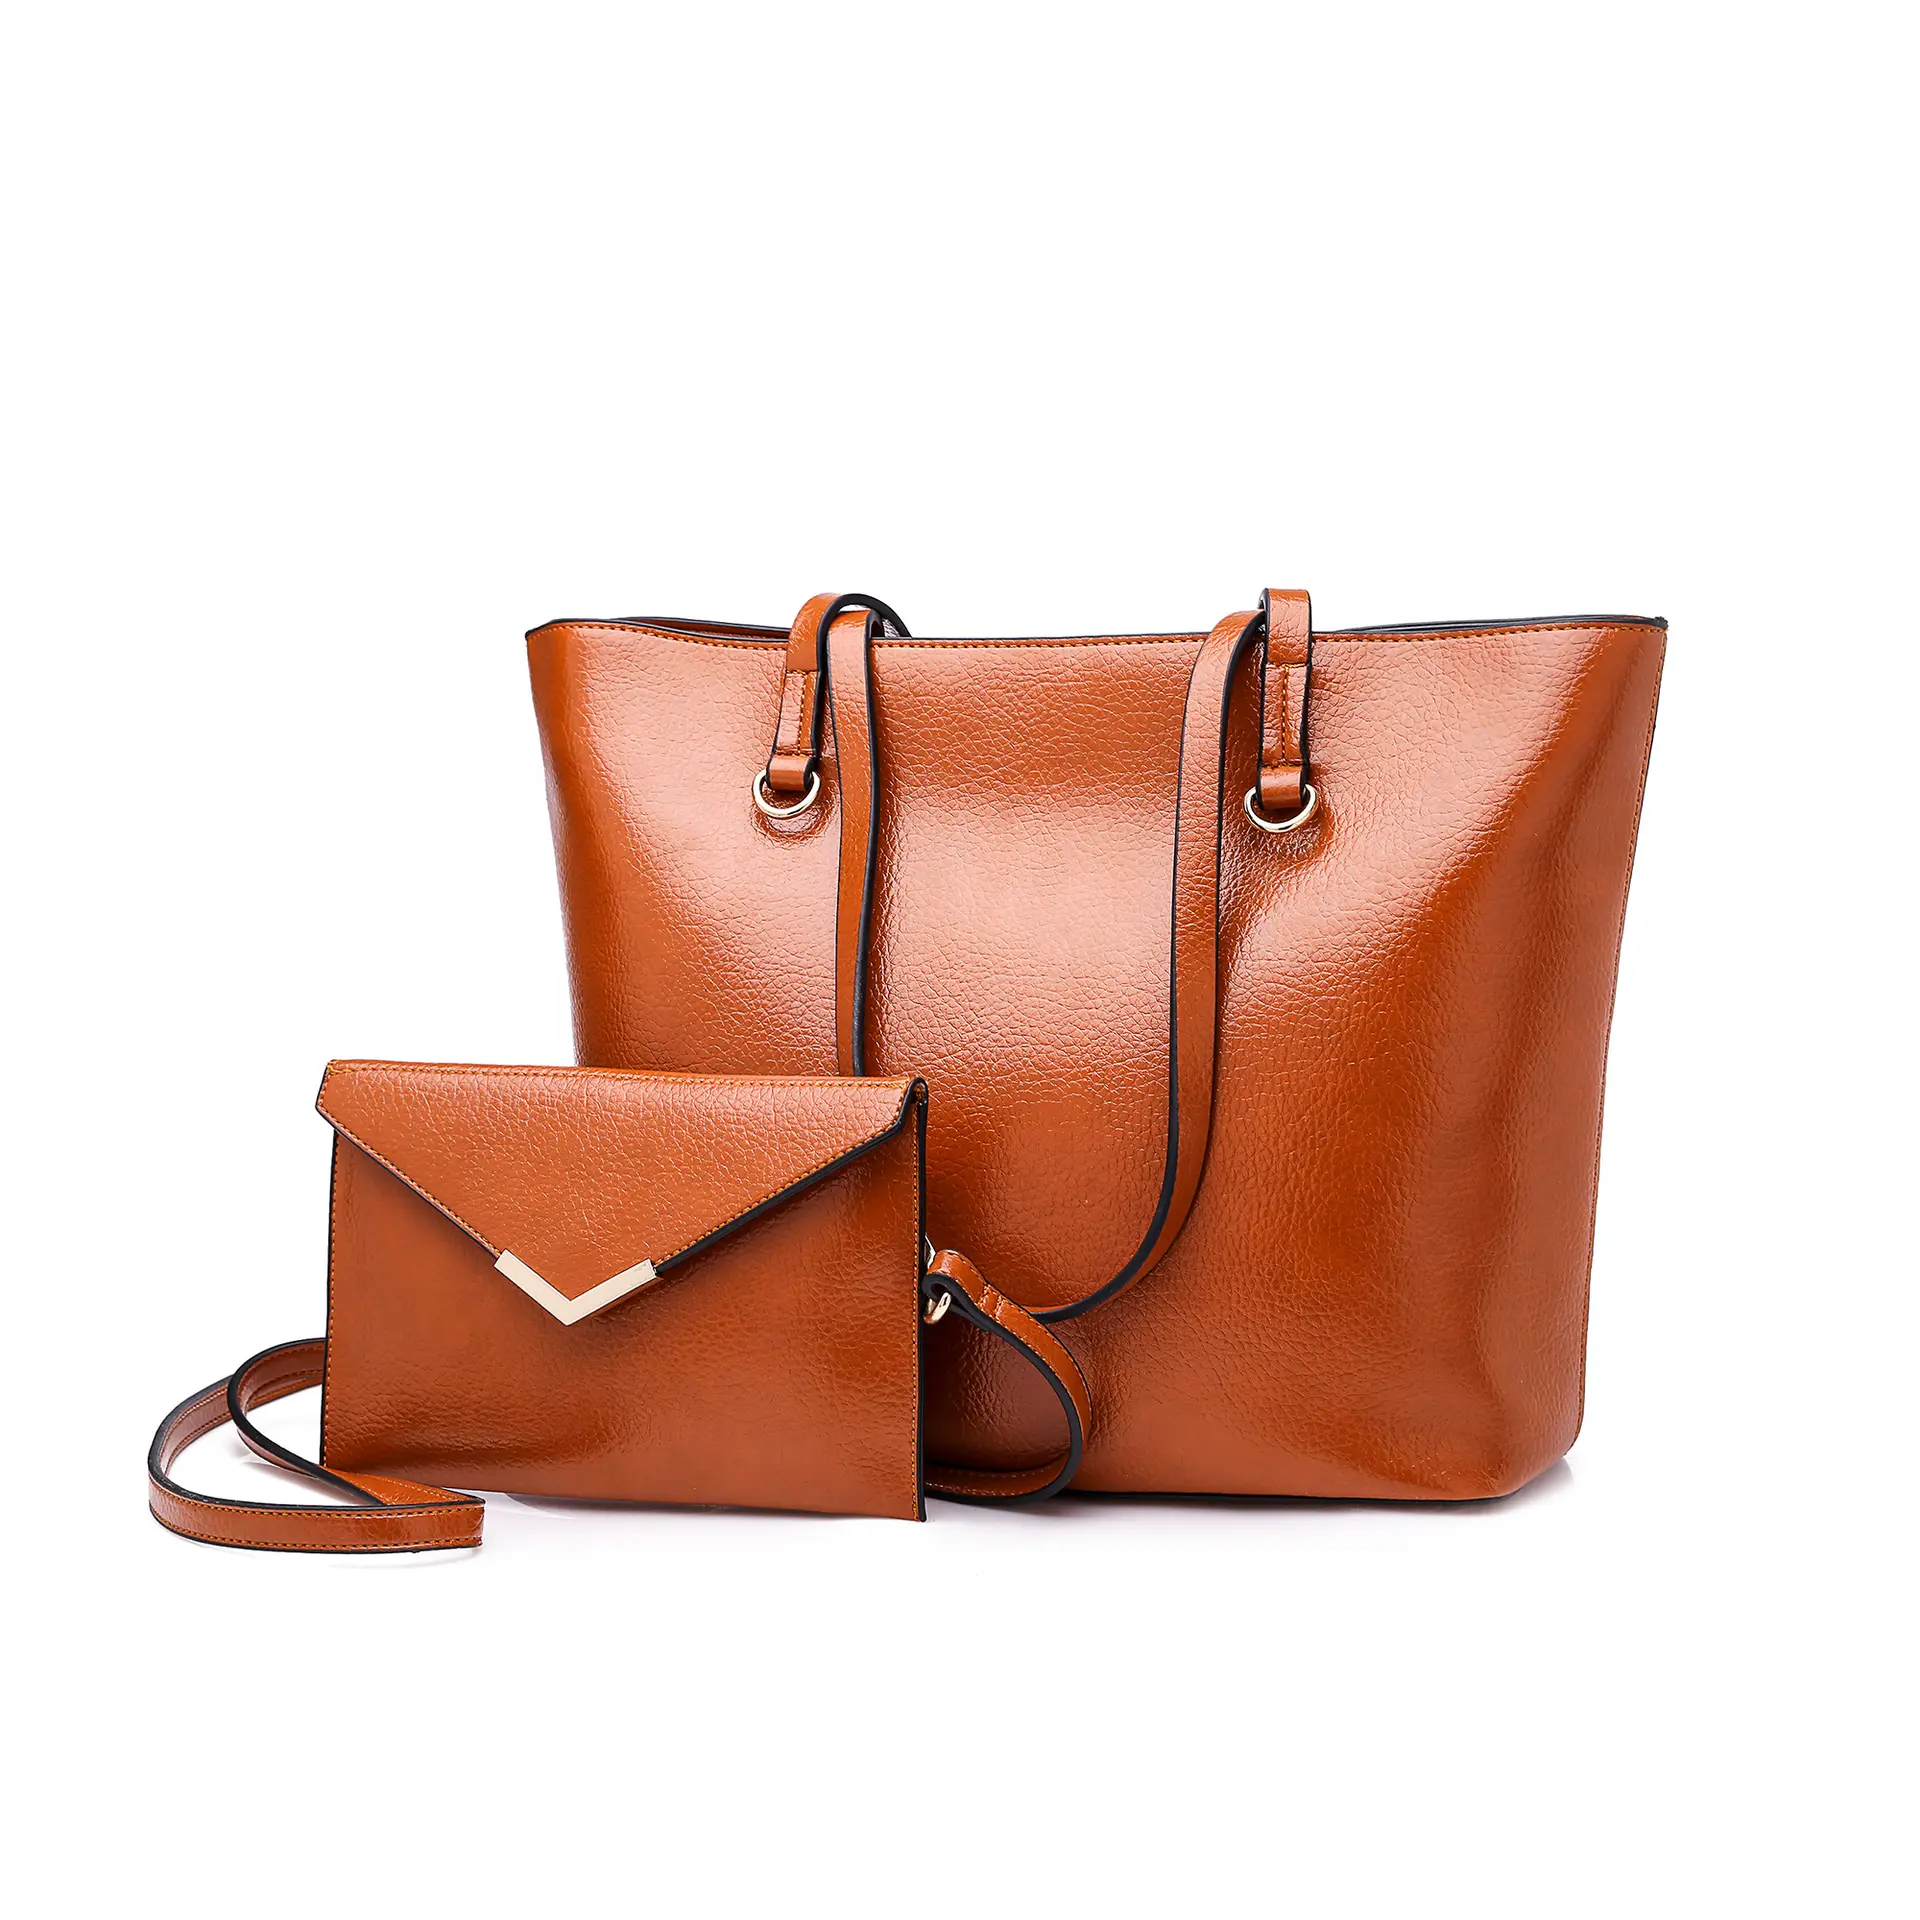 Angedanlia оптовая продажа дамских сумок Европейская и американская мода женская сумка и кошелек 3 в 1 комплект сумок